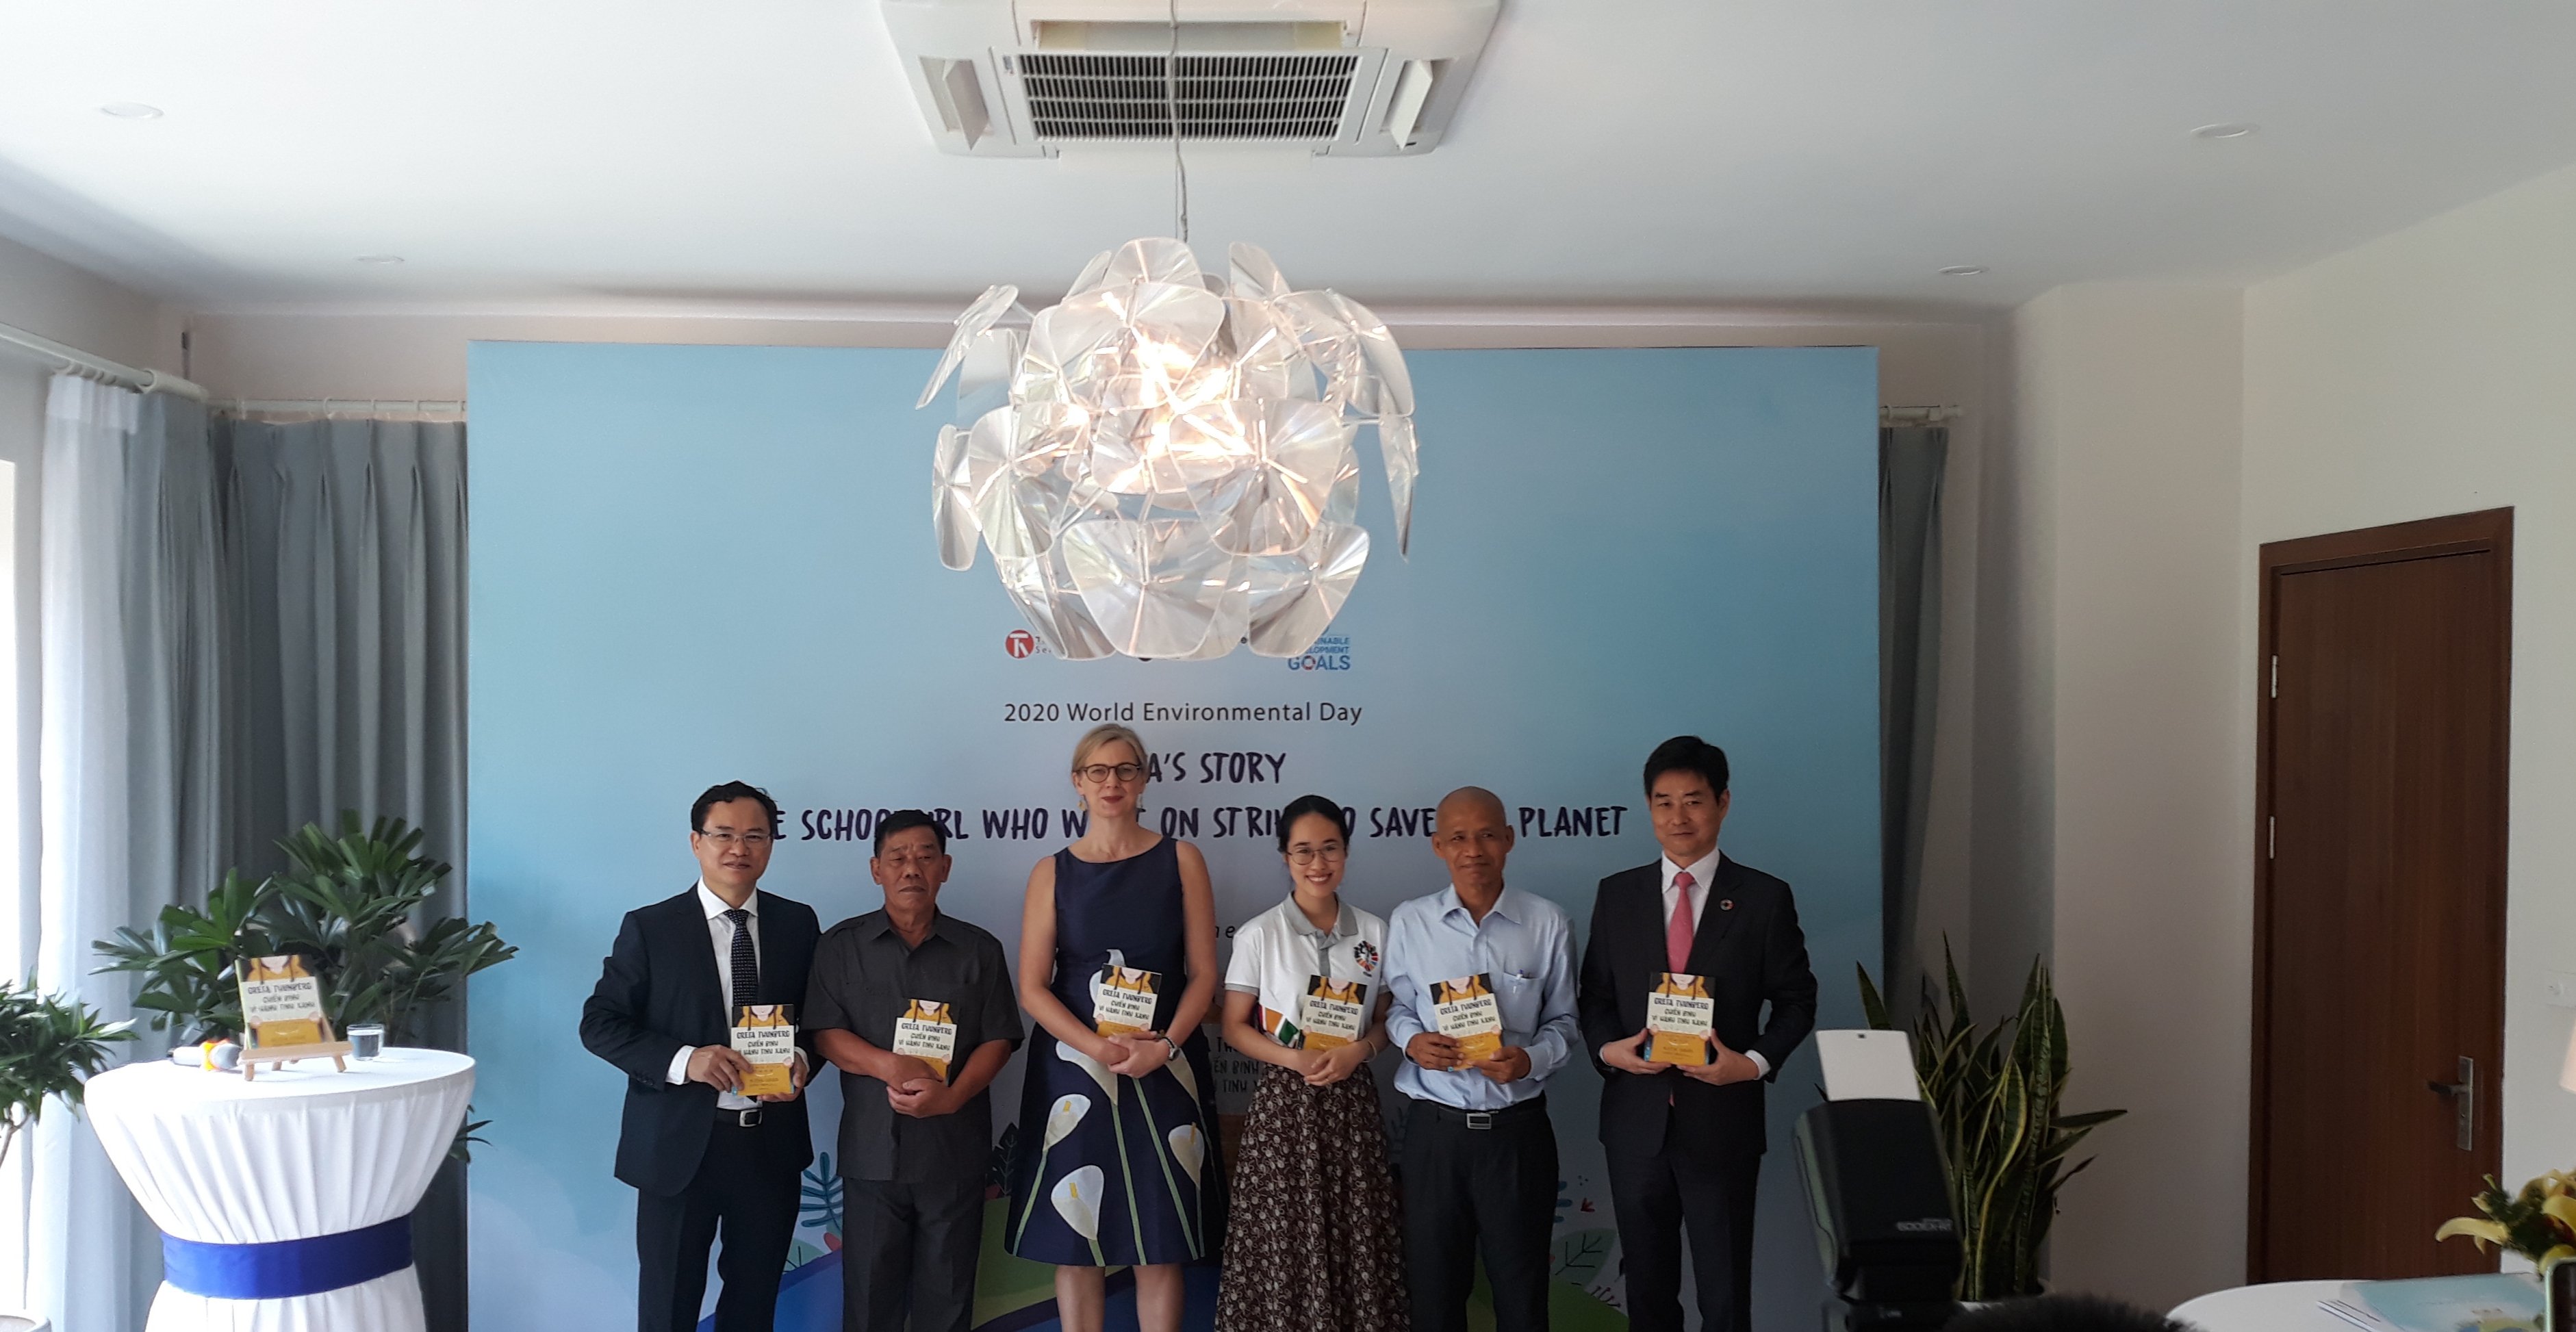  Đại sứ Thụy Điển tại Việt Nam Ann Măwe trong buổi ra mắt cuốn sách 